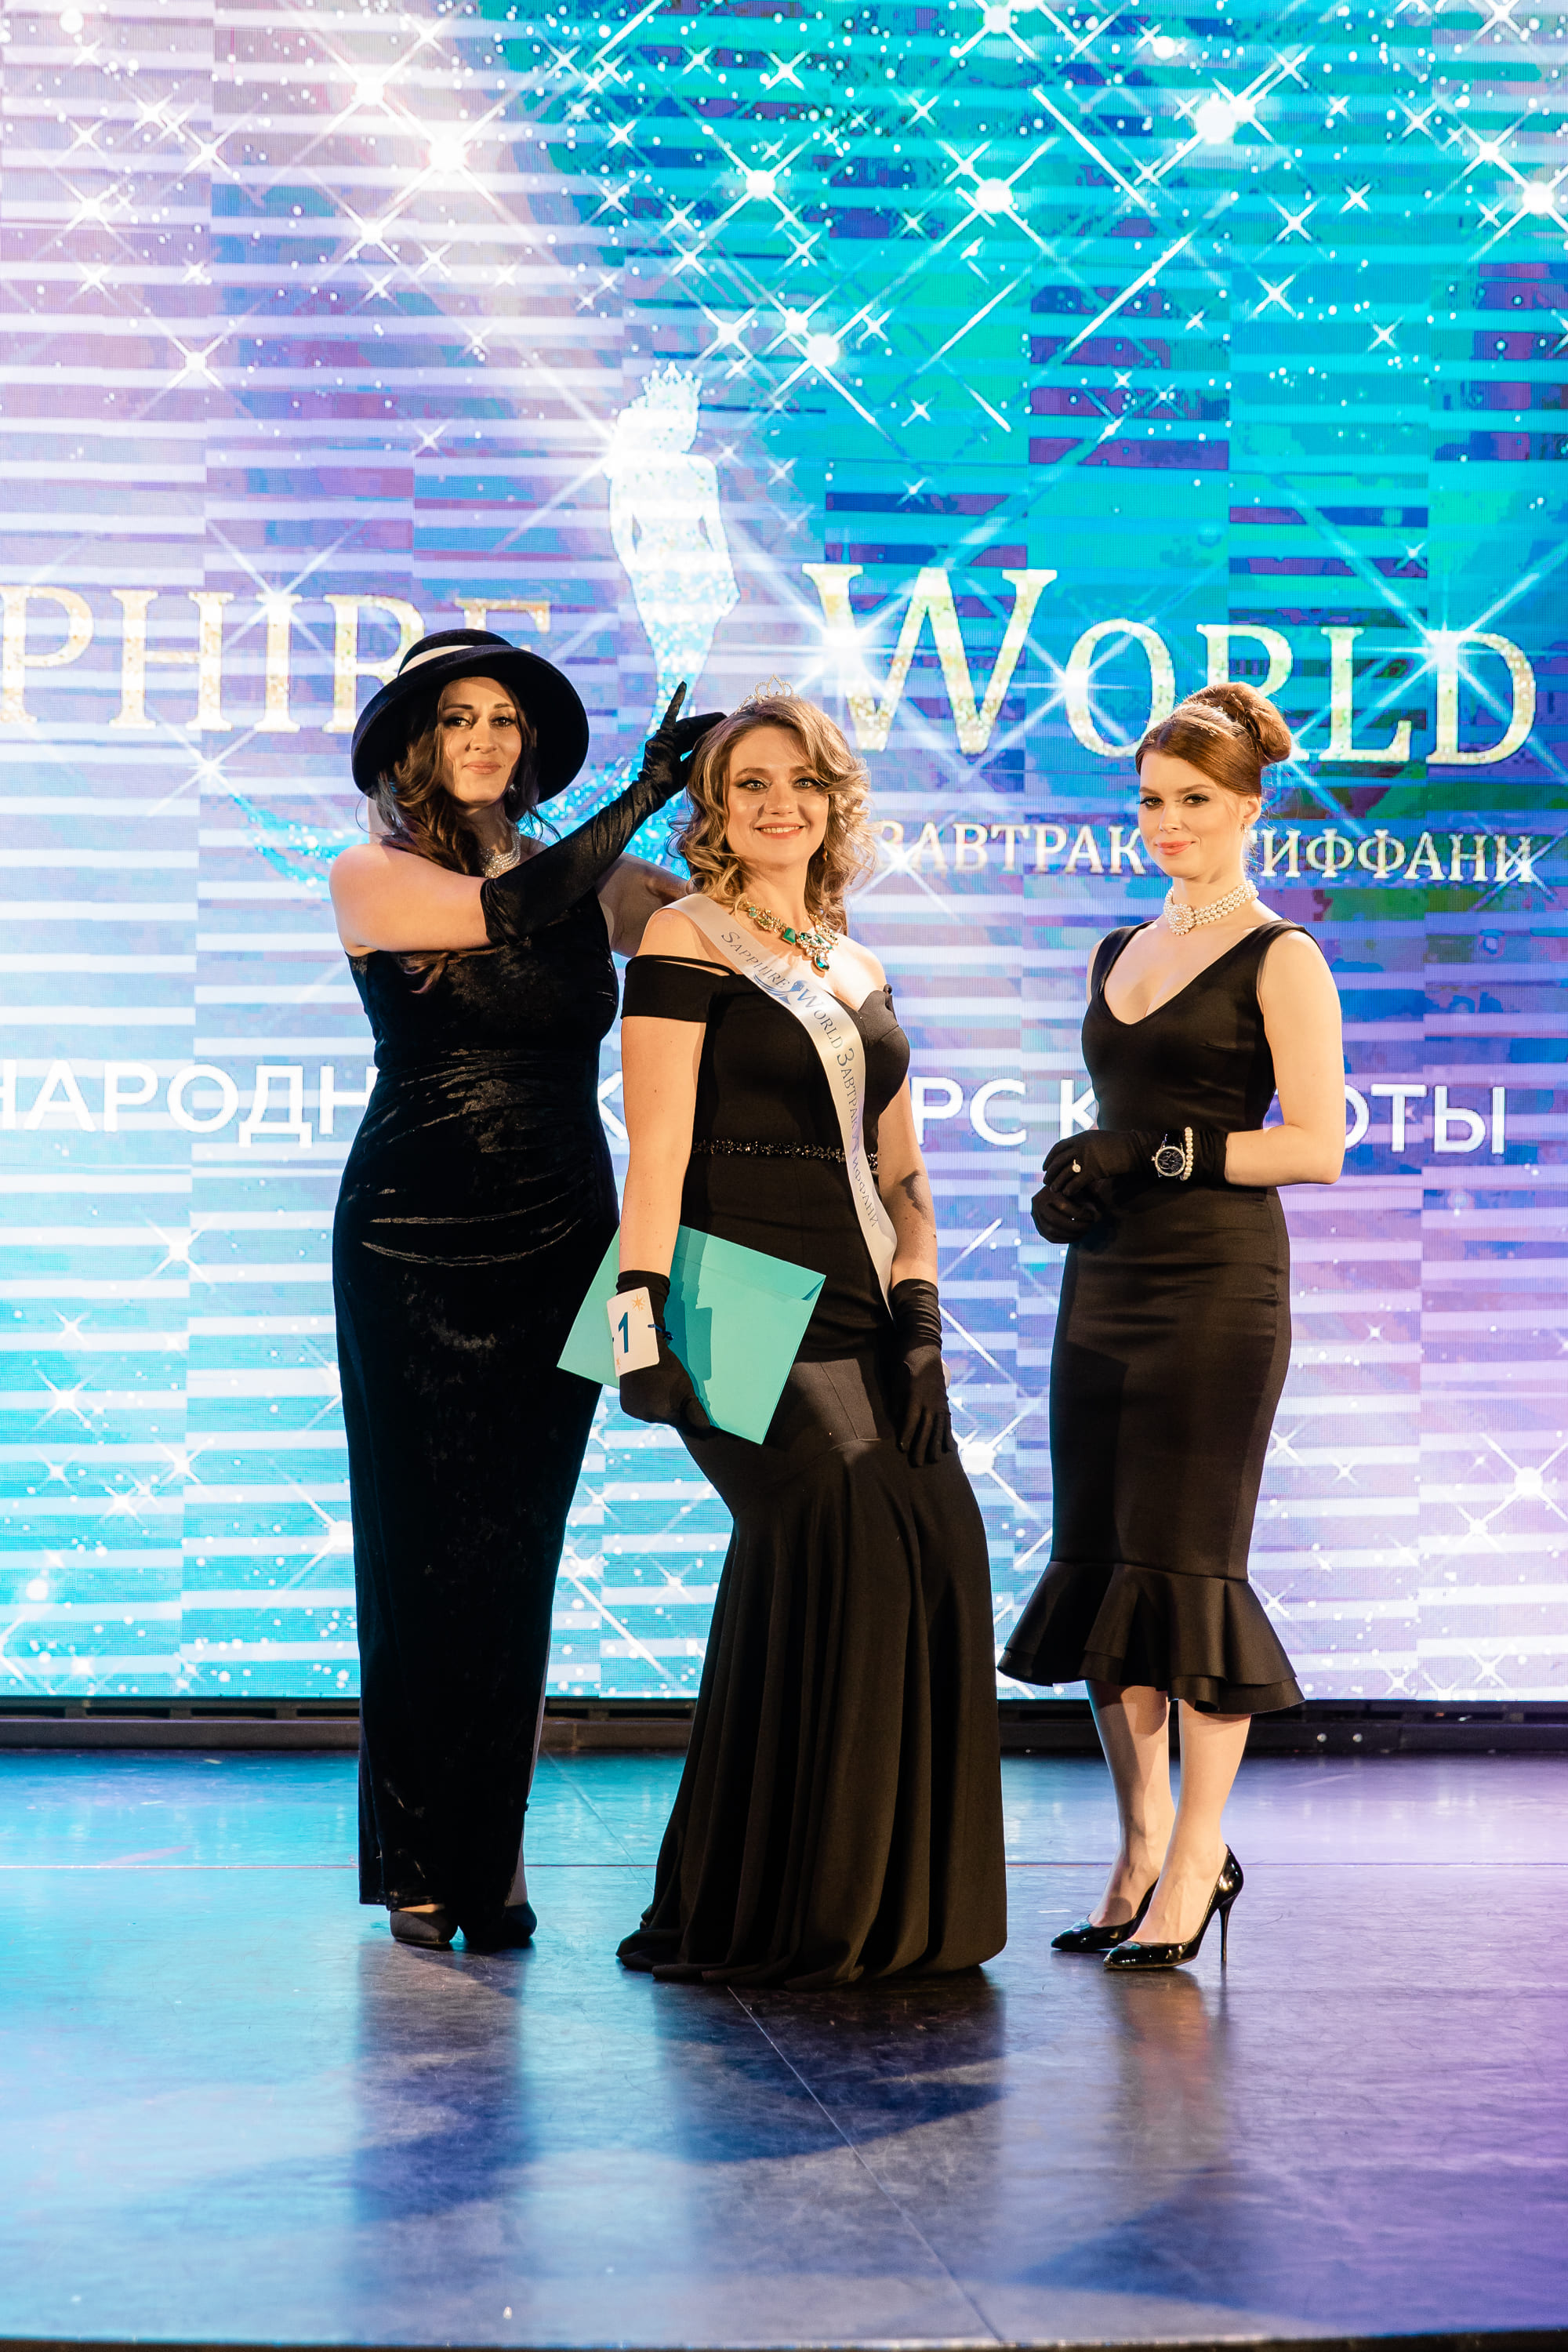 В Санкт-Петербурге прошли грандиозные финалы международного конкурса красоты Sapphire World